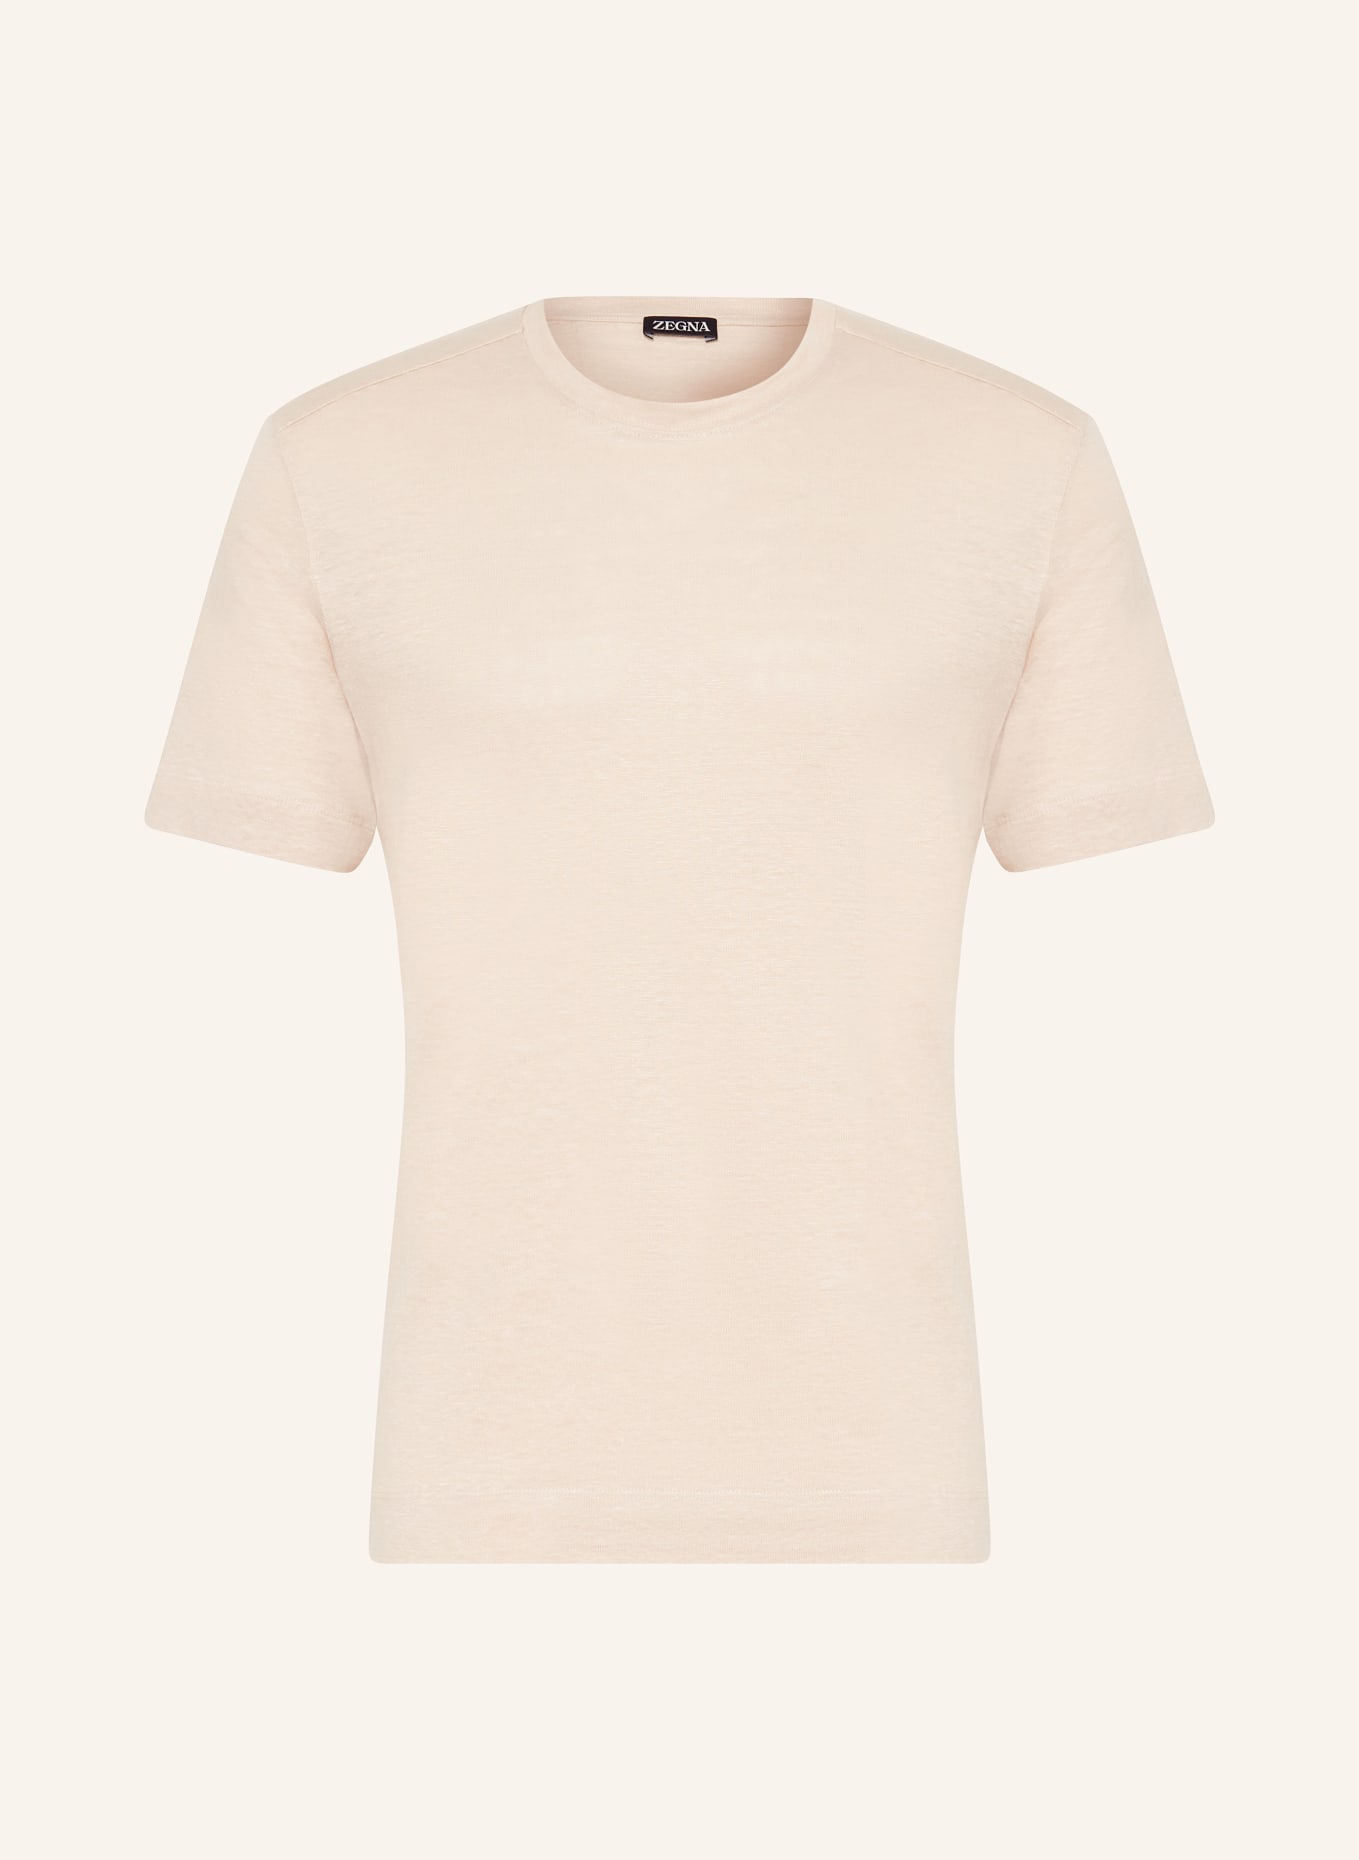 ZEGNA T-Shirt aus Leinen, Farbe: BEIGE (Bild 1)